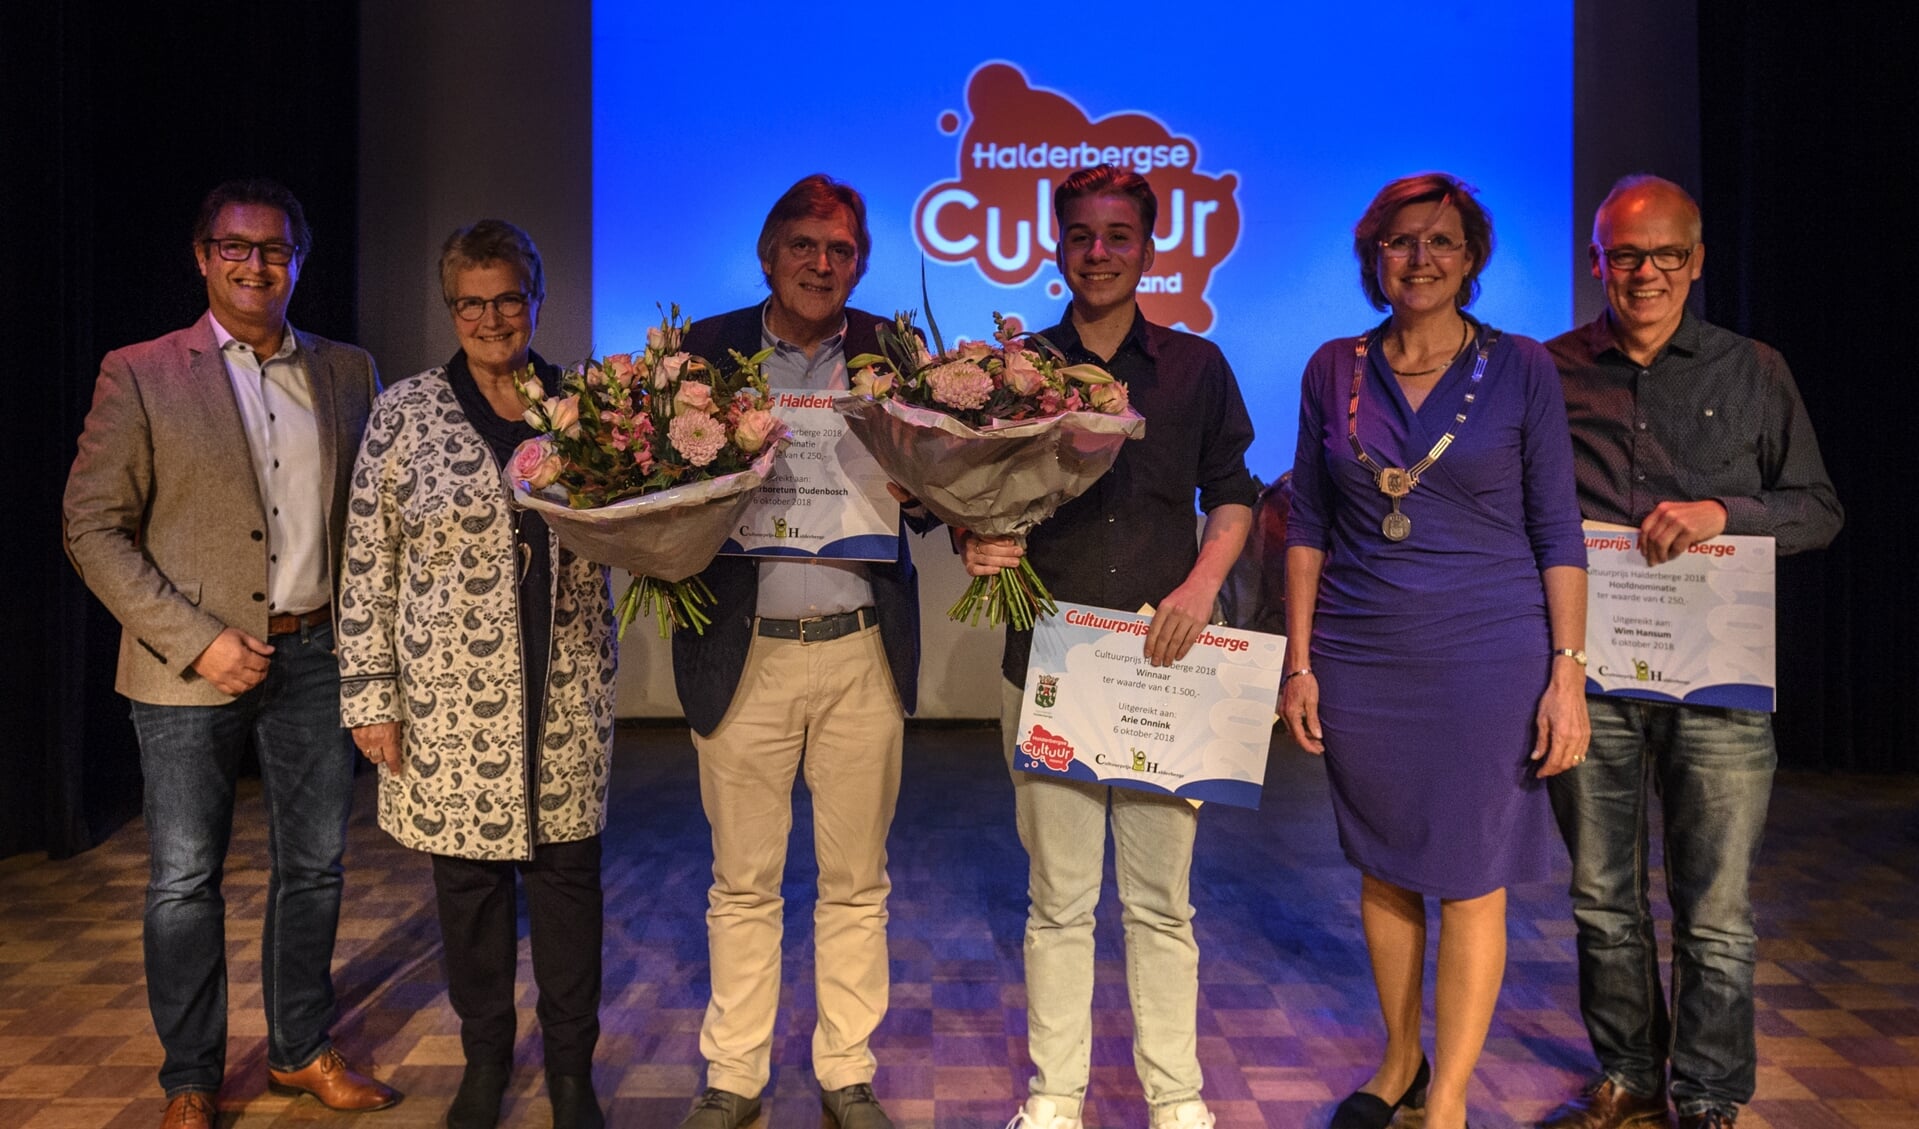 Wethouder Hans Wierikx (links) was in 2018 bij de uitreiking van de Cultuurprijs aan Joep Onnink, zoon van winnaar Ari Onnink. ARCHIEFFOTO PETER BRAAKMANN